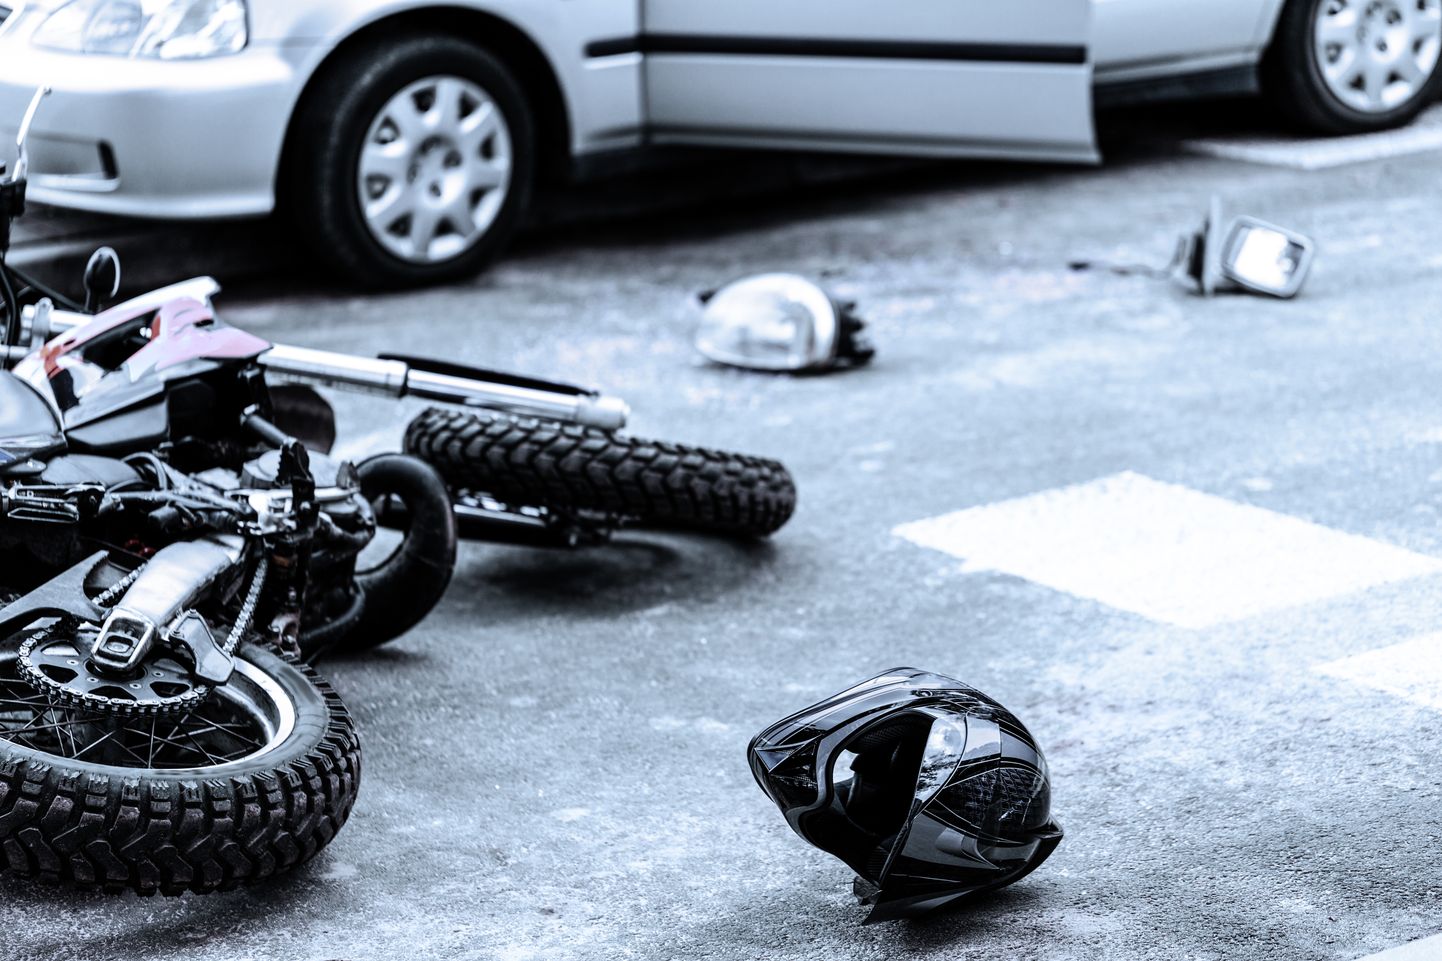 Мотоцикл после аварии. Иллюстративное фото